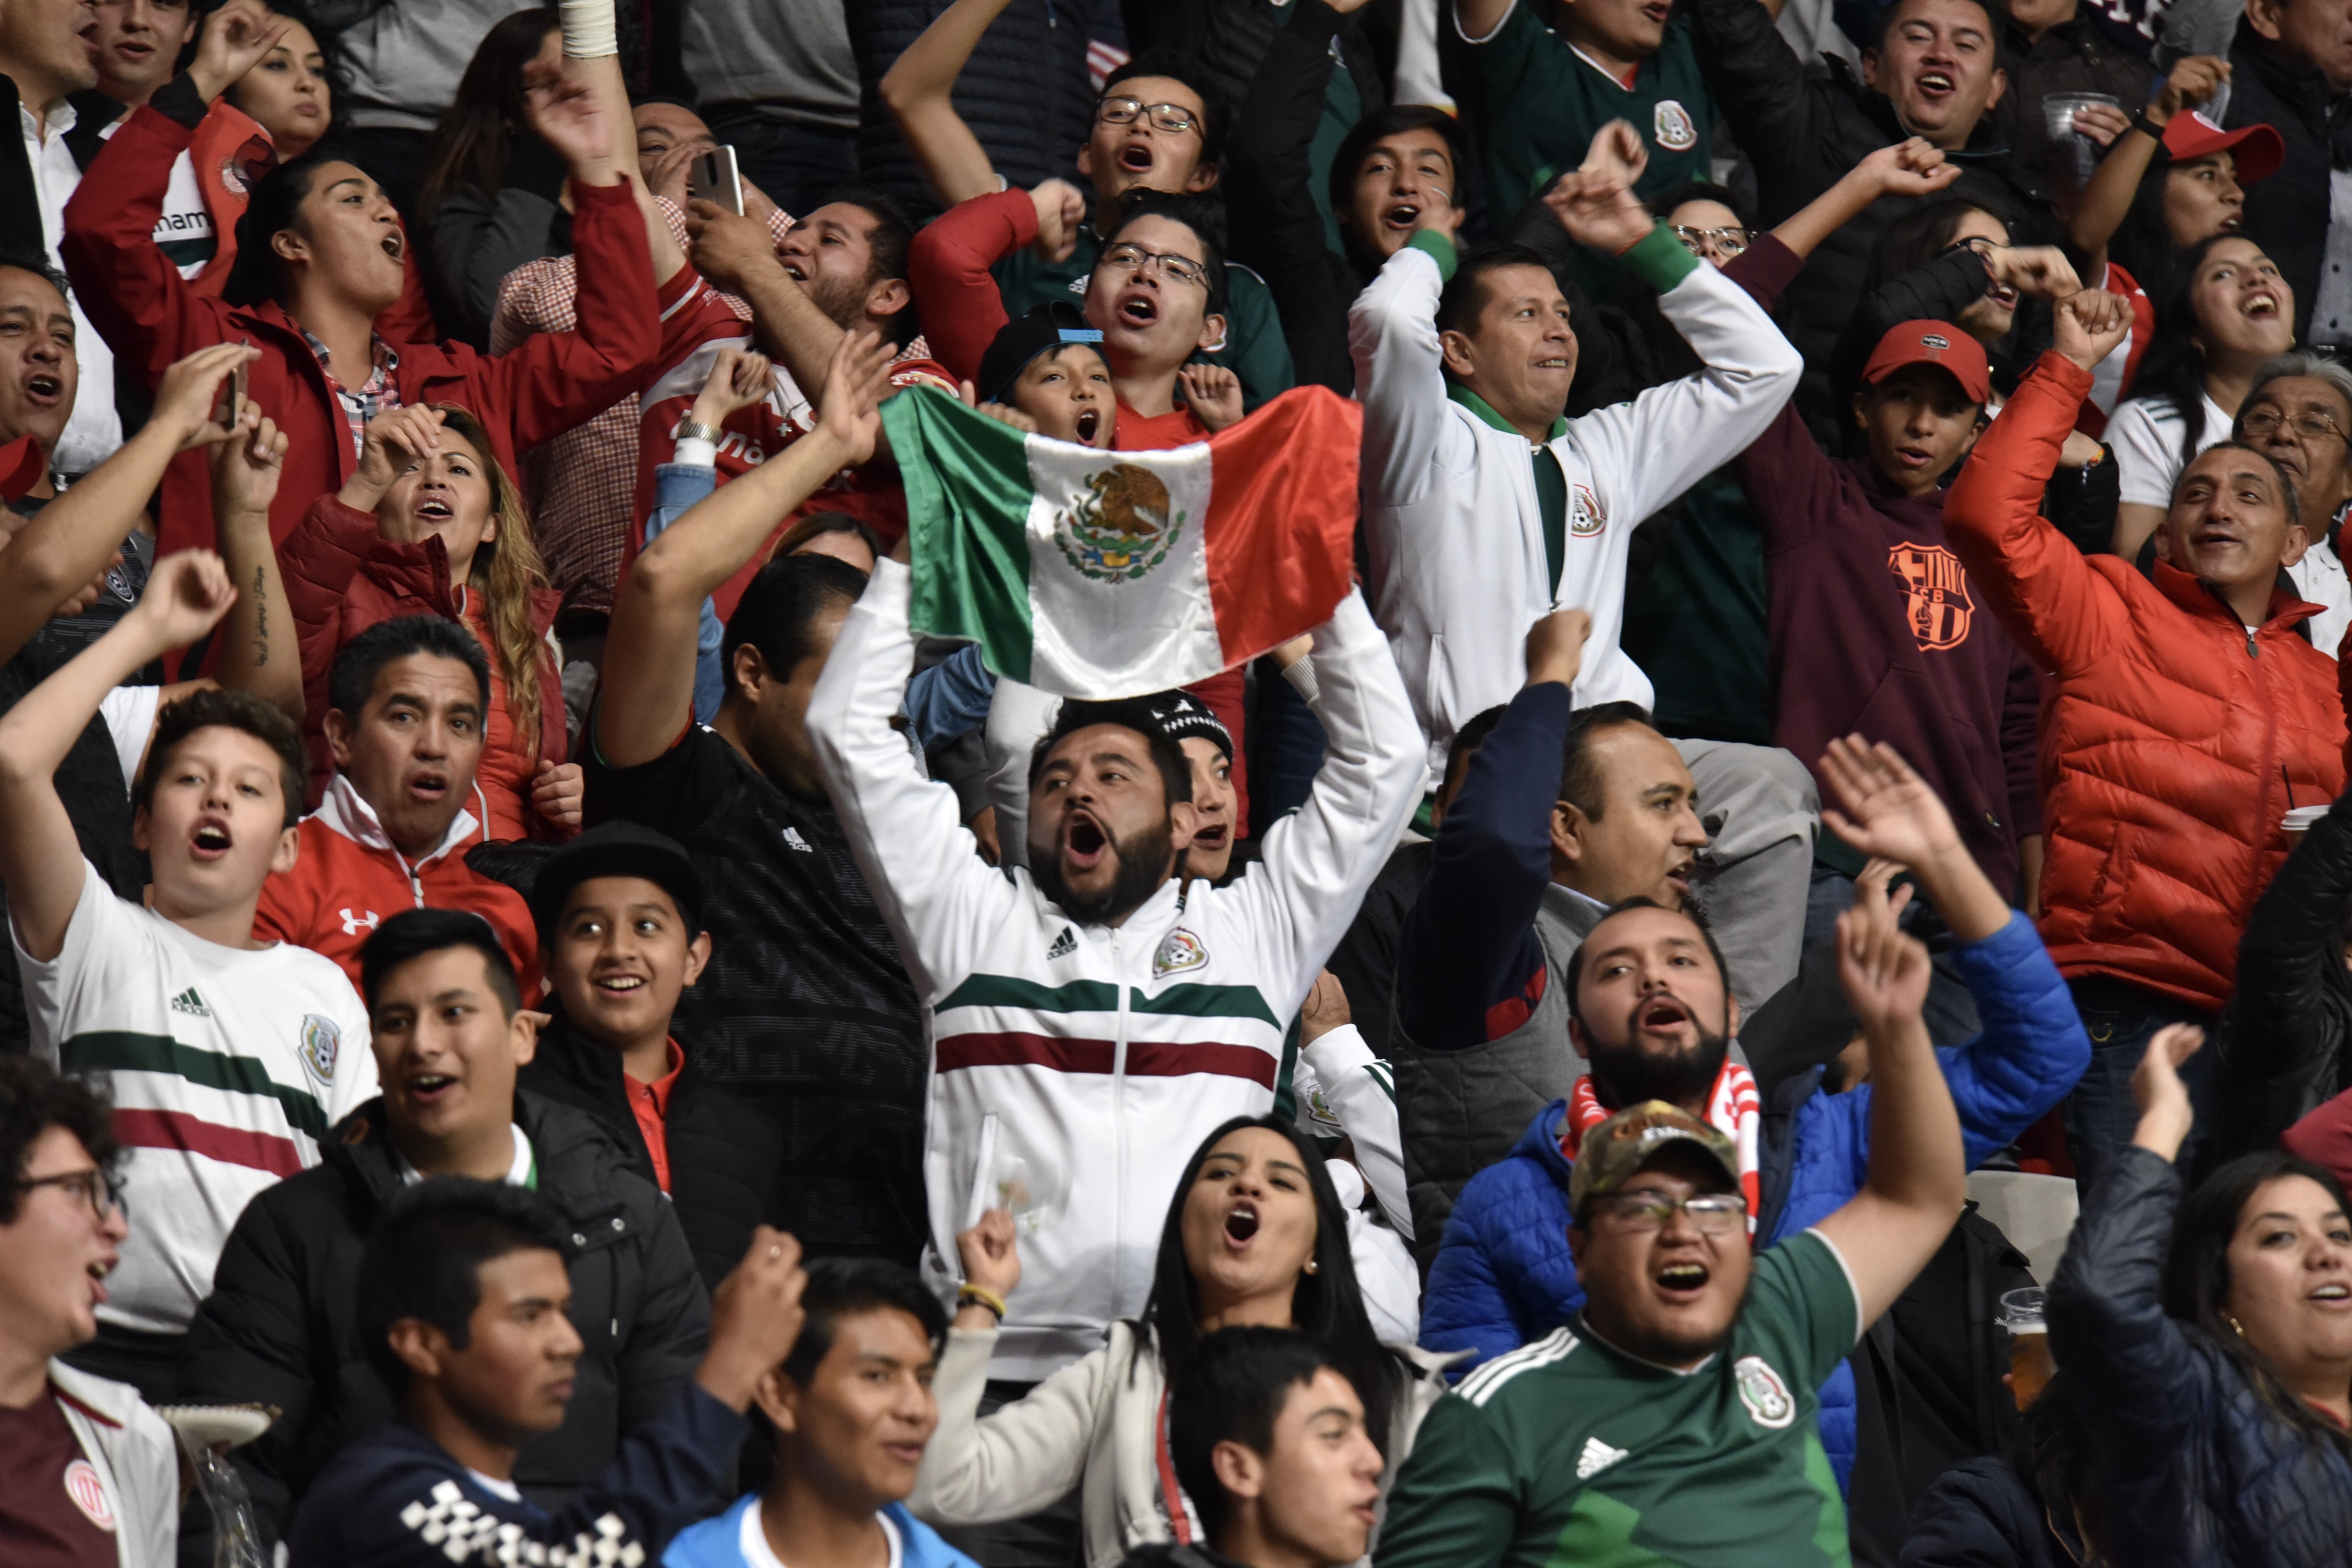 TOLUCA, ESTADO DE MÉXICO, 02OCTUBRE2019.- La Selección Nacional de Mexico de fútbol logró la victoria ante la selección de Trinidad y Tobago en un partido amistoso en la cancha del estadio Nemesio Diez, con un marcador final de   2-0. FOTO: CRISANTA ESPINOSA AGUILAR /CUARTOSCURO.COM